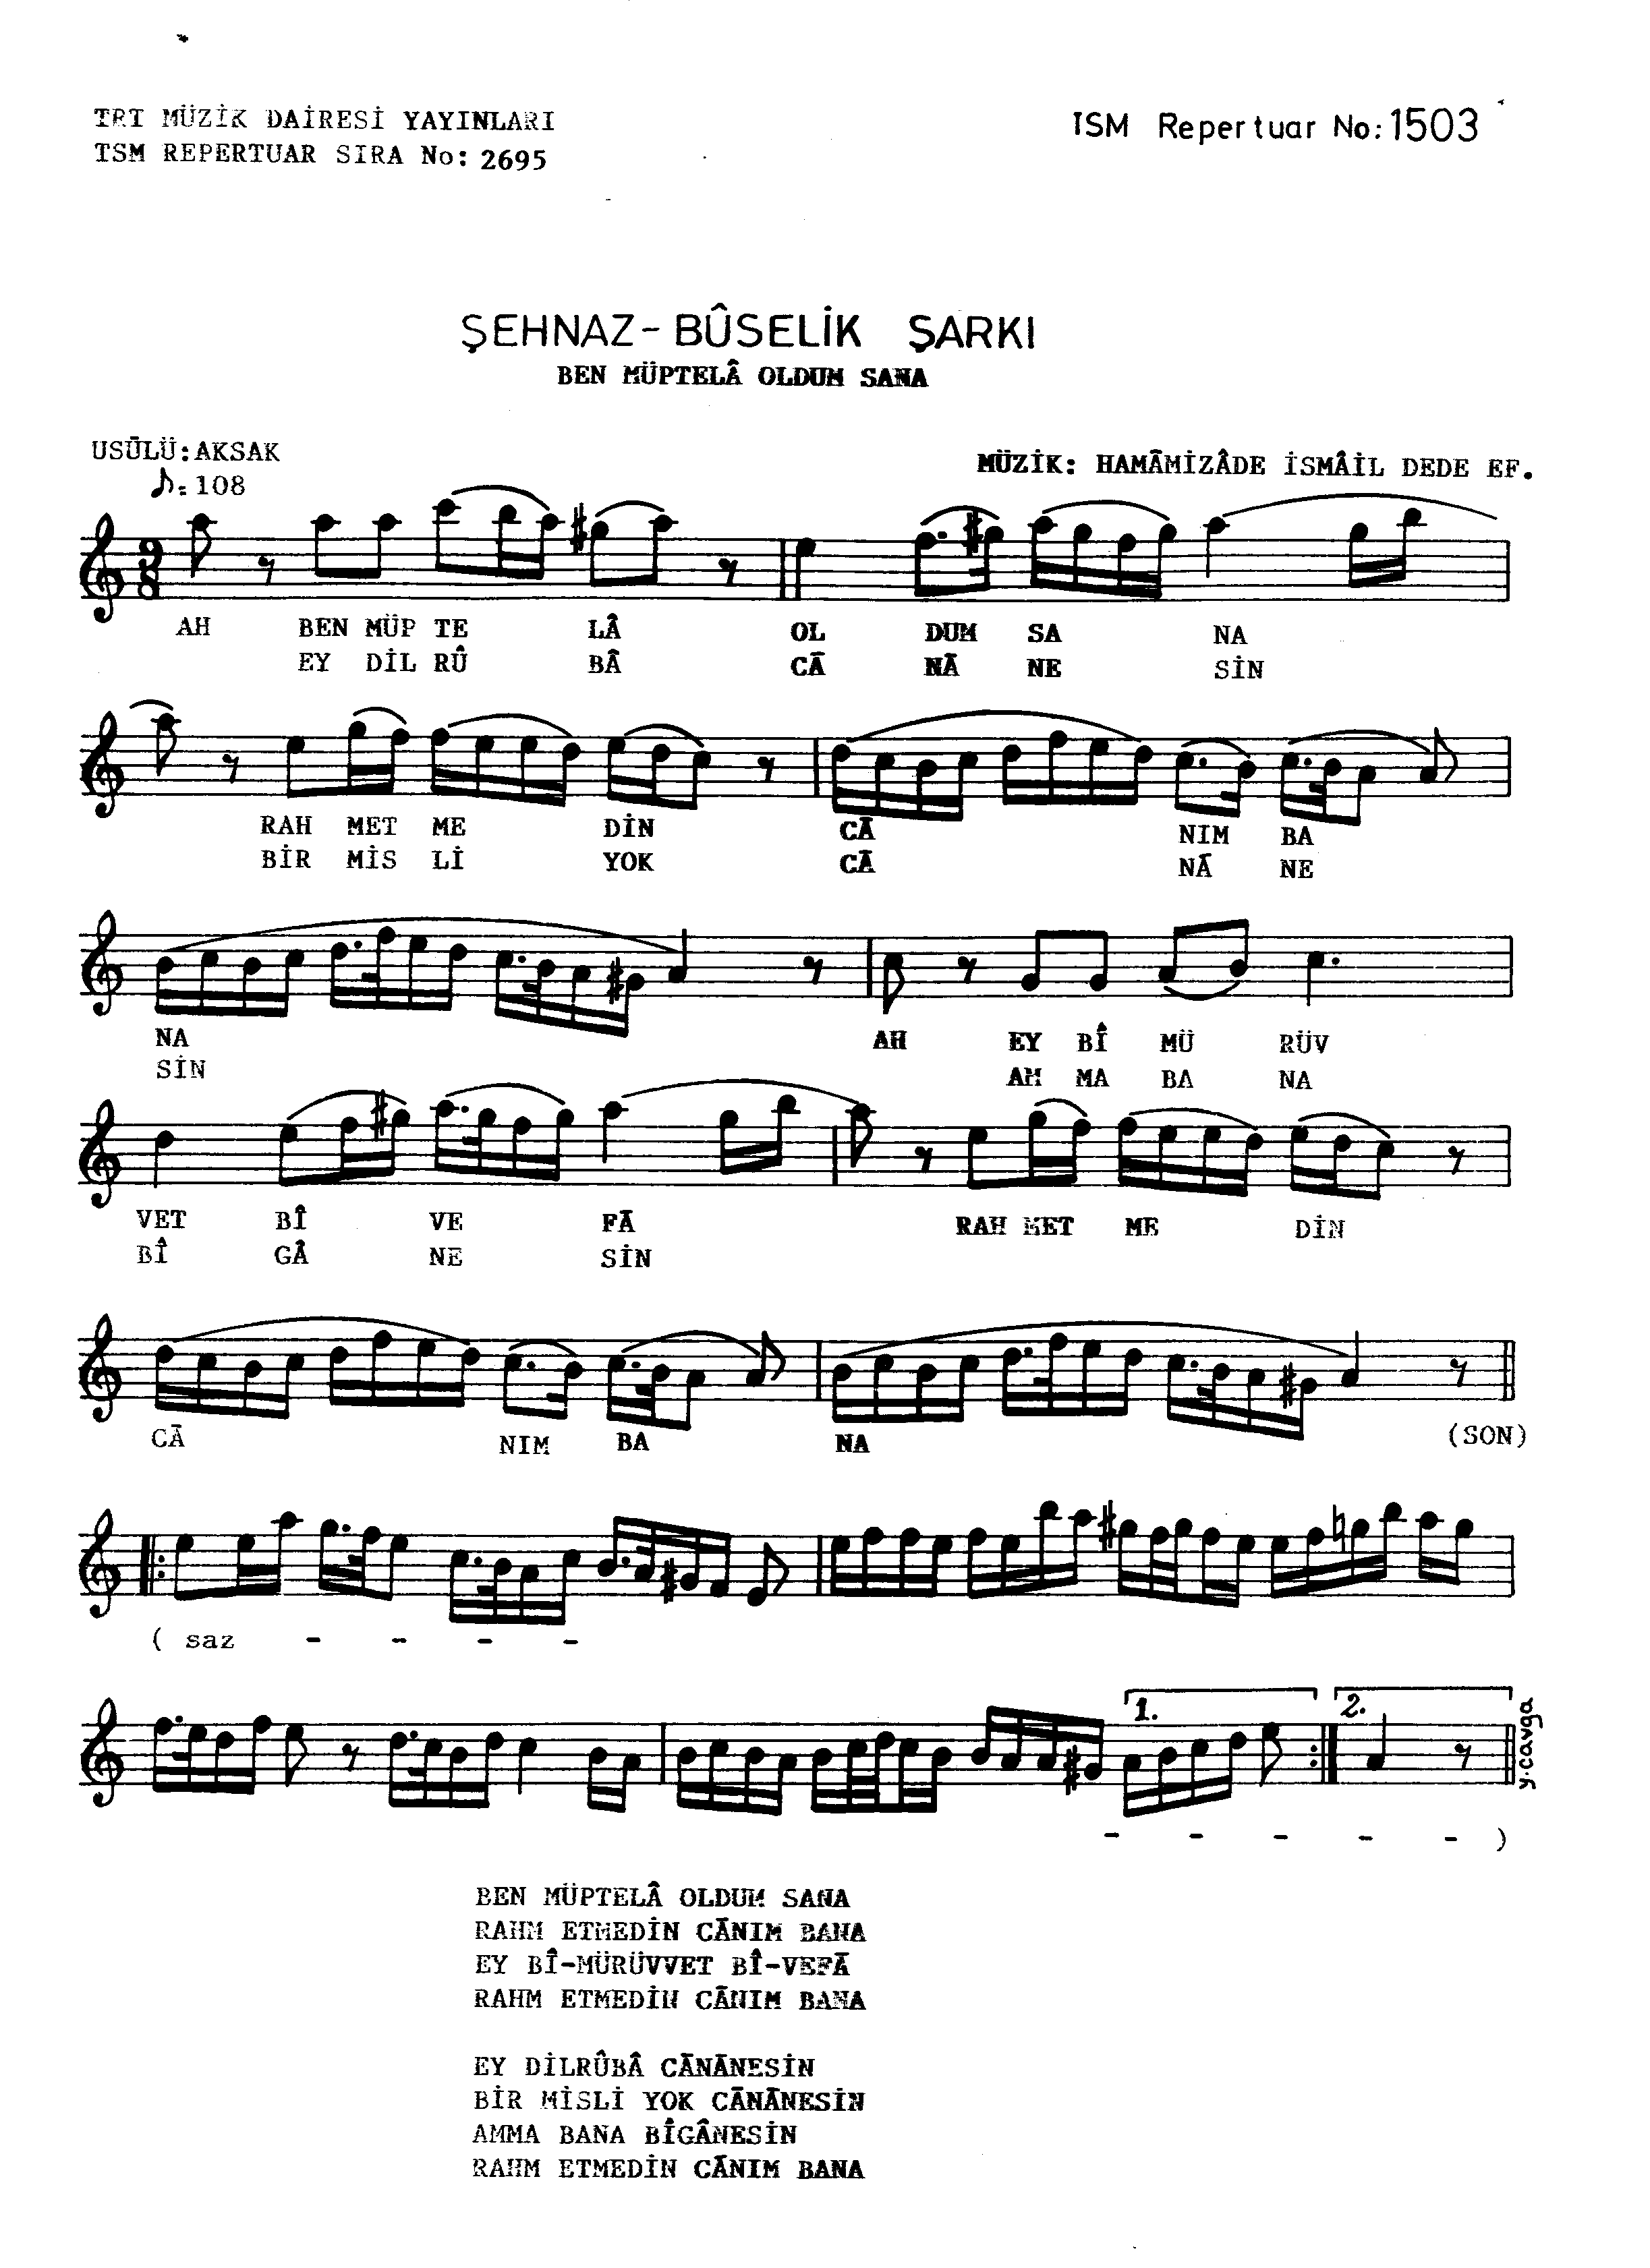 Şehnâz Bûselik - Şarkı - Dede Efendi - Sayfa 1